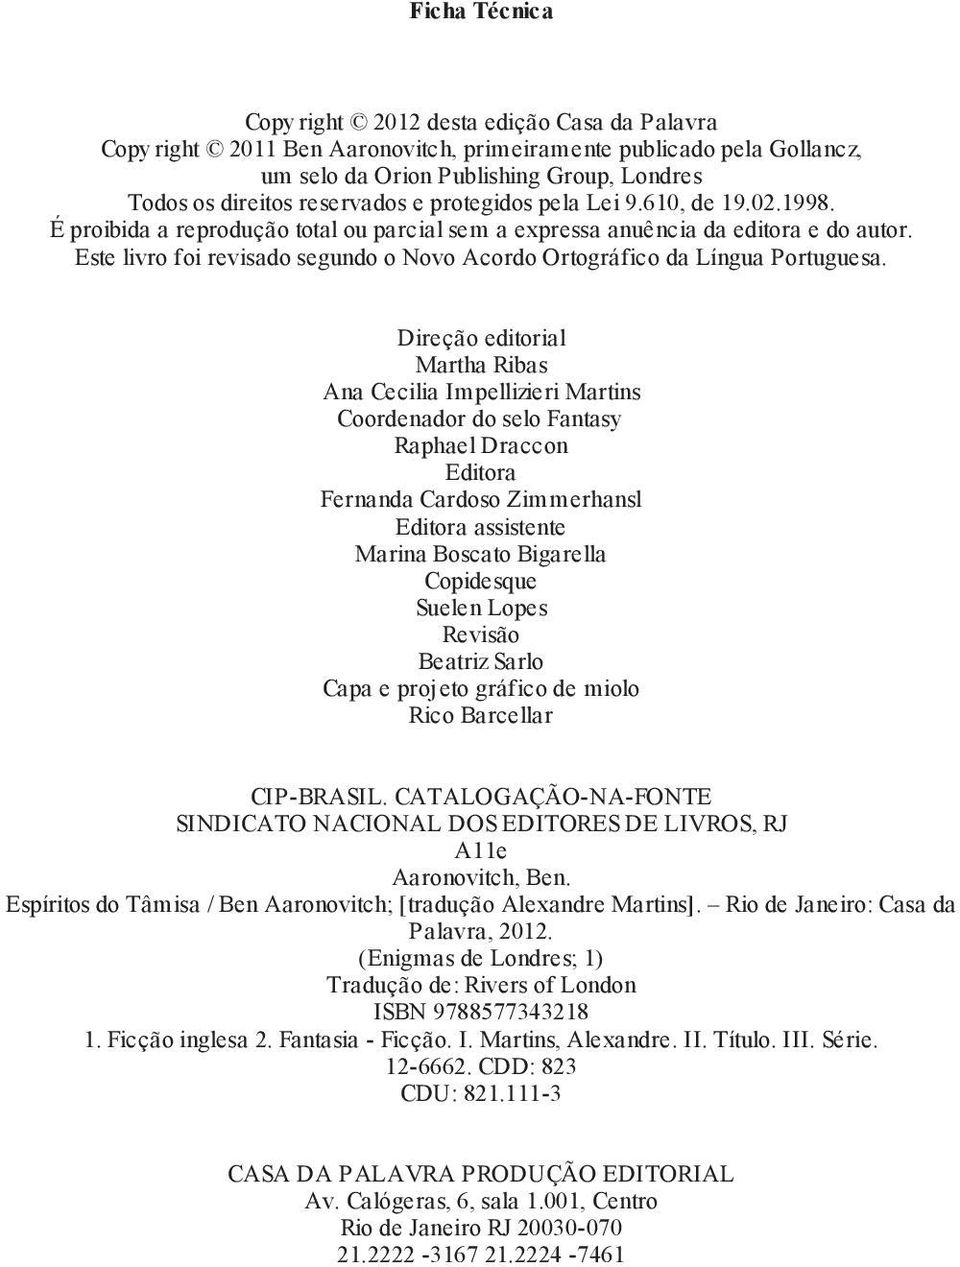 Este livro foi revisado segundo o Novo Acordo Ortográfico da Língua Portuguesa.